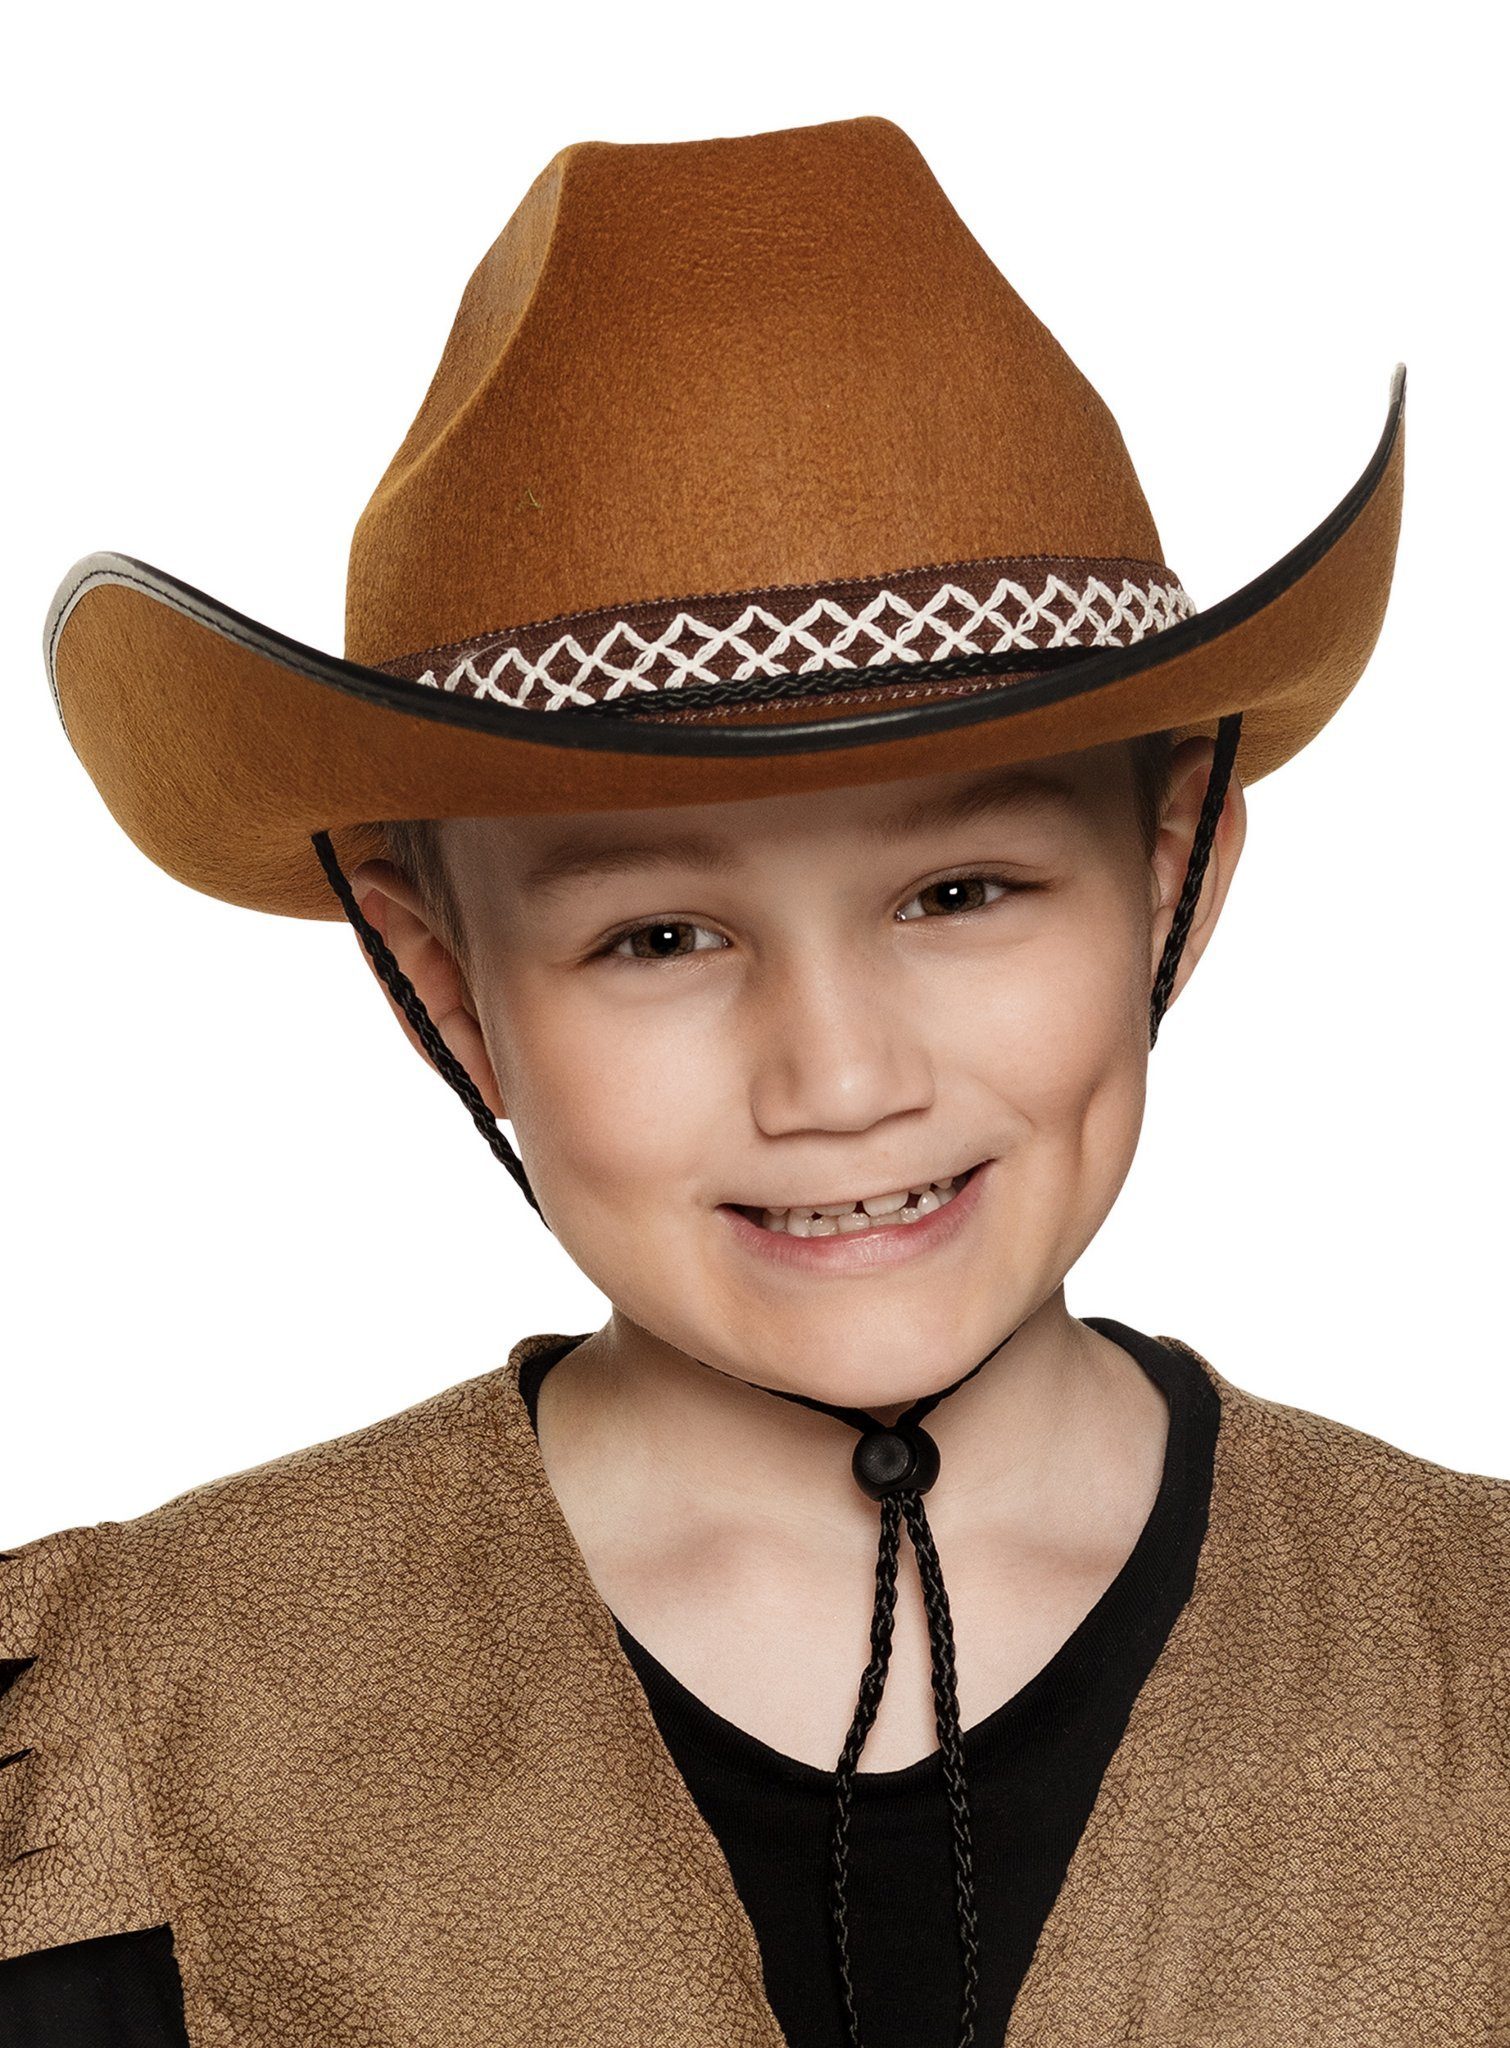 Boland Kostüm Cowboyhut braun, Robuster Westernhut passend zum Cowboy Kinderkostüm